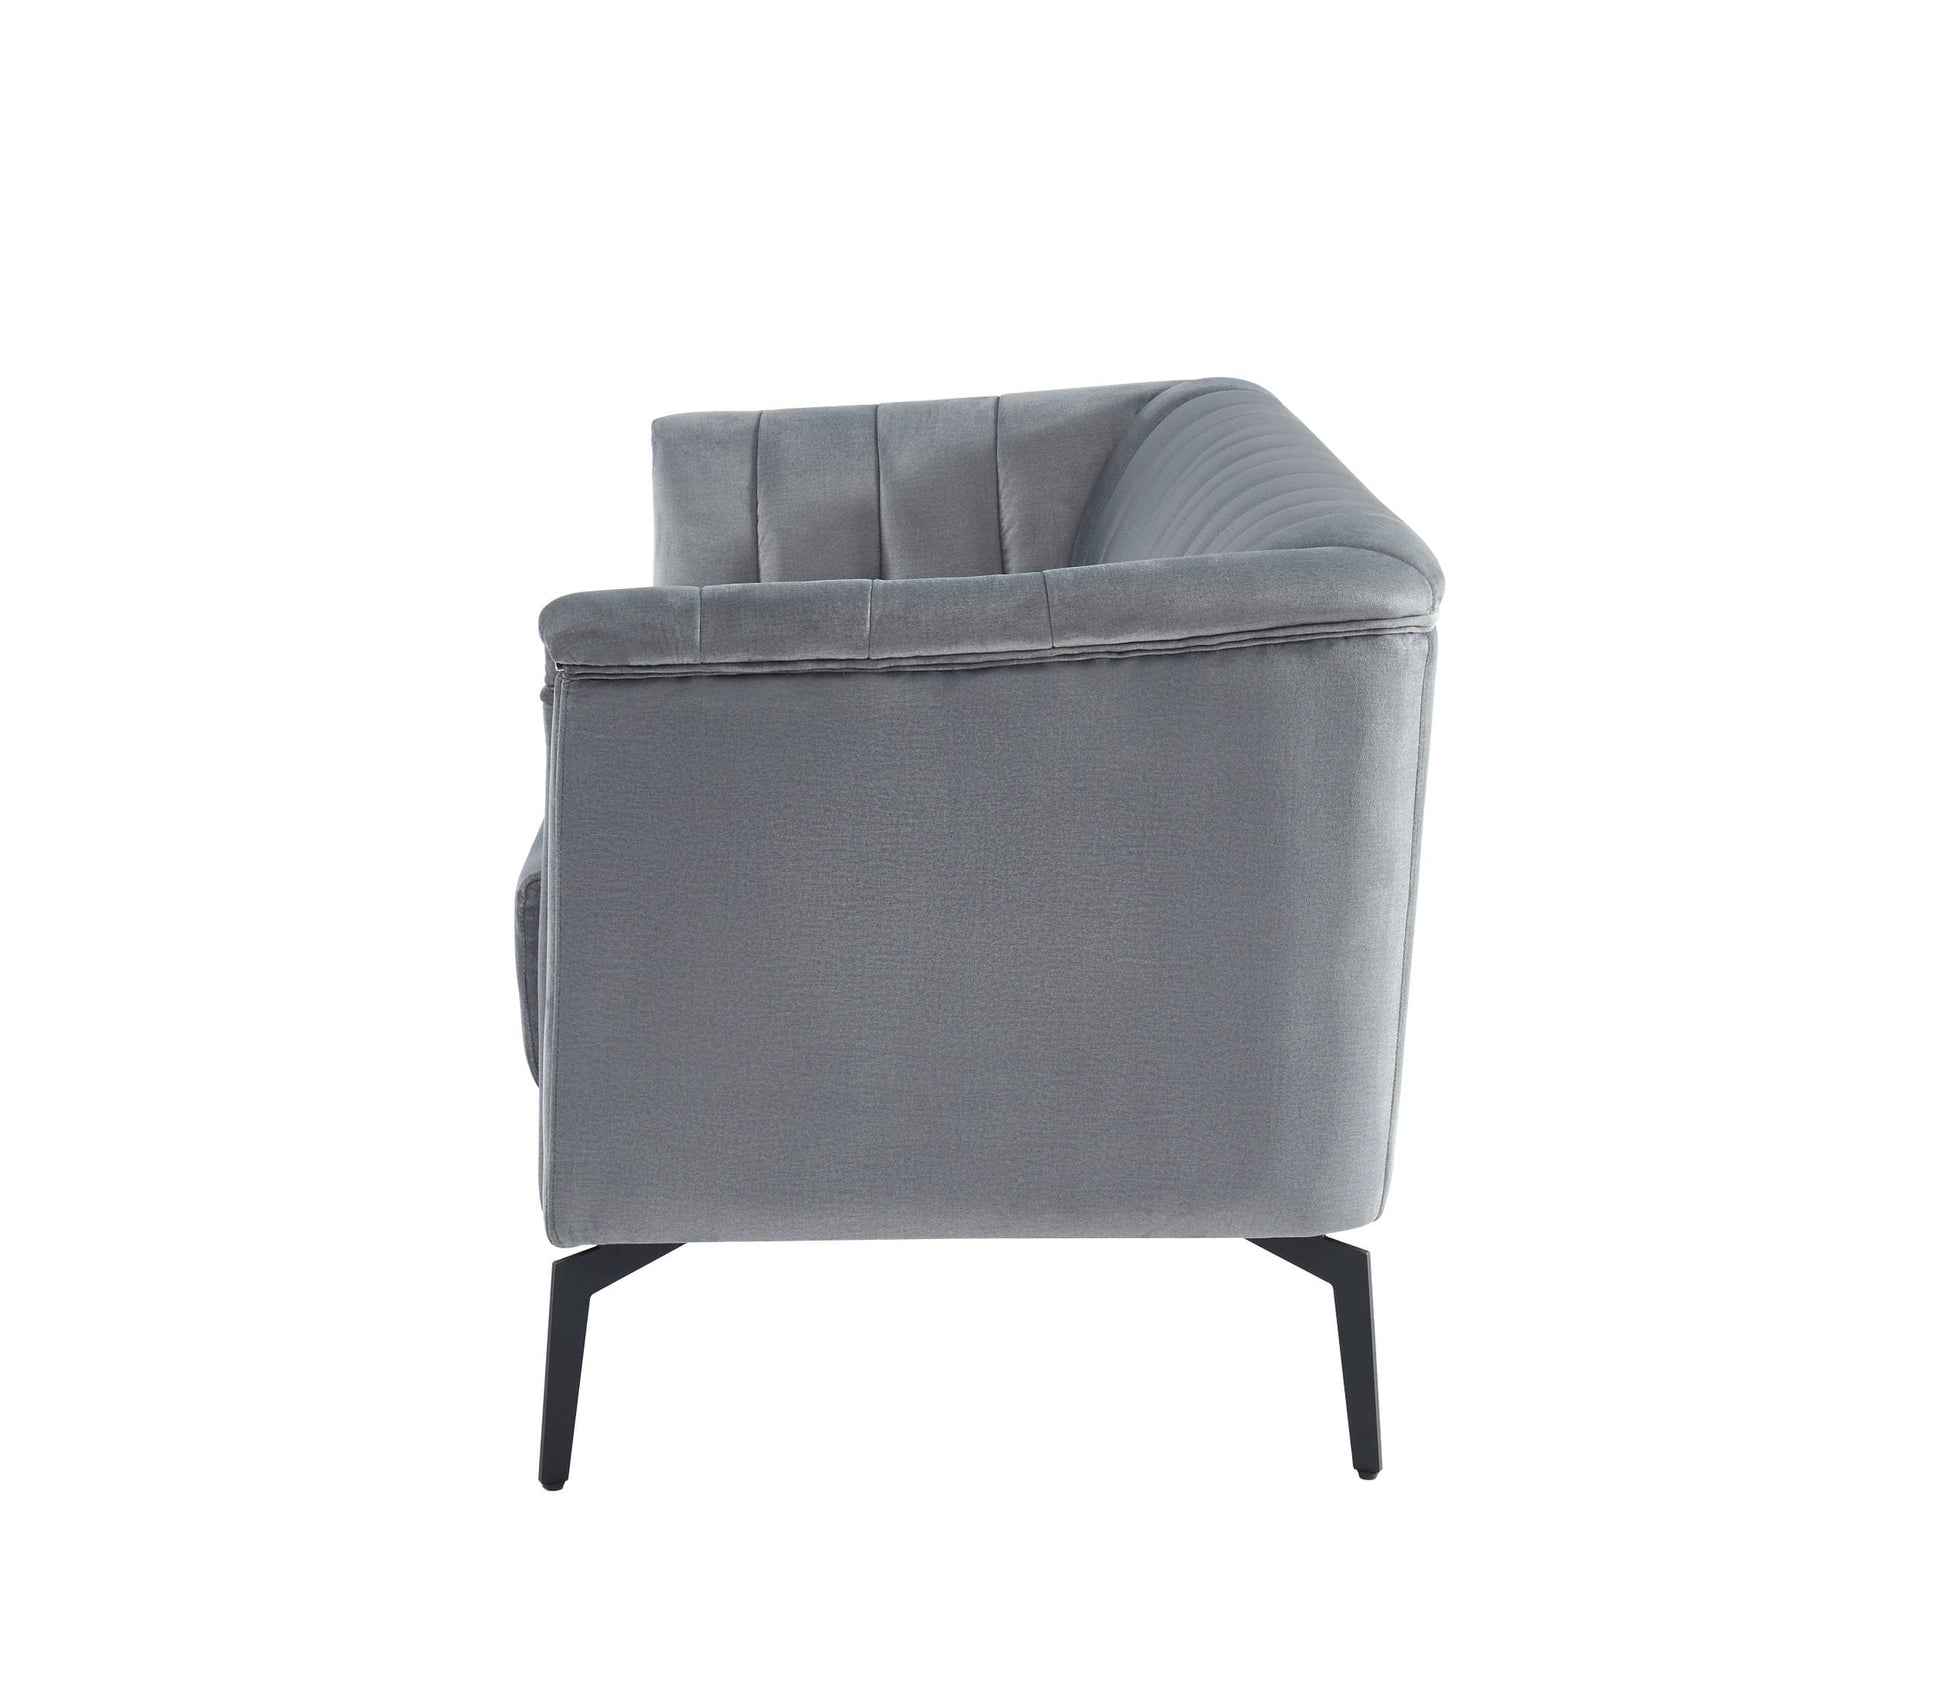 Divani Casa Patton - Modern Grey Fabric Sofa-3